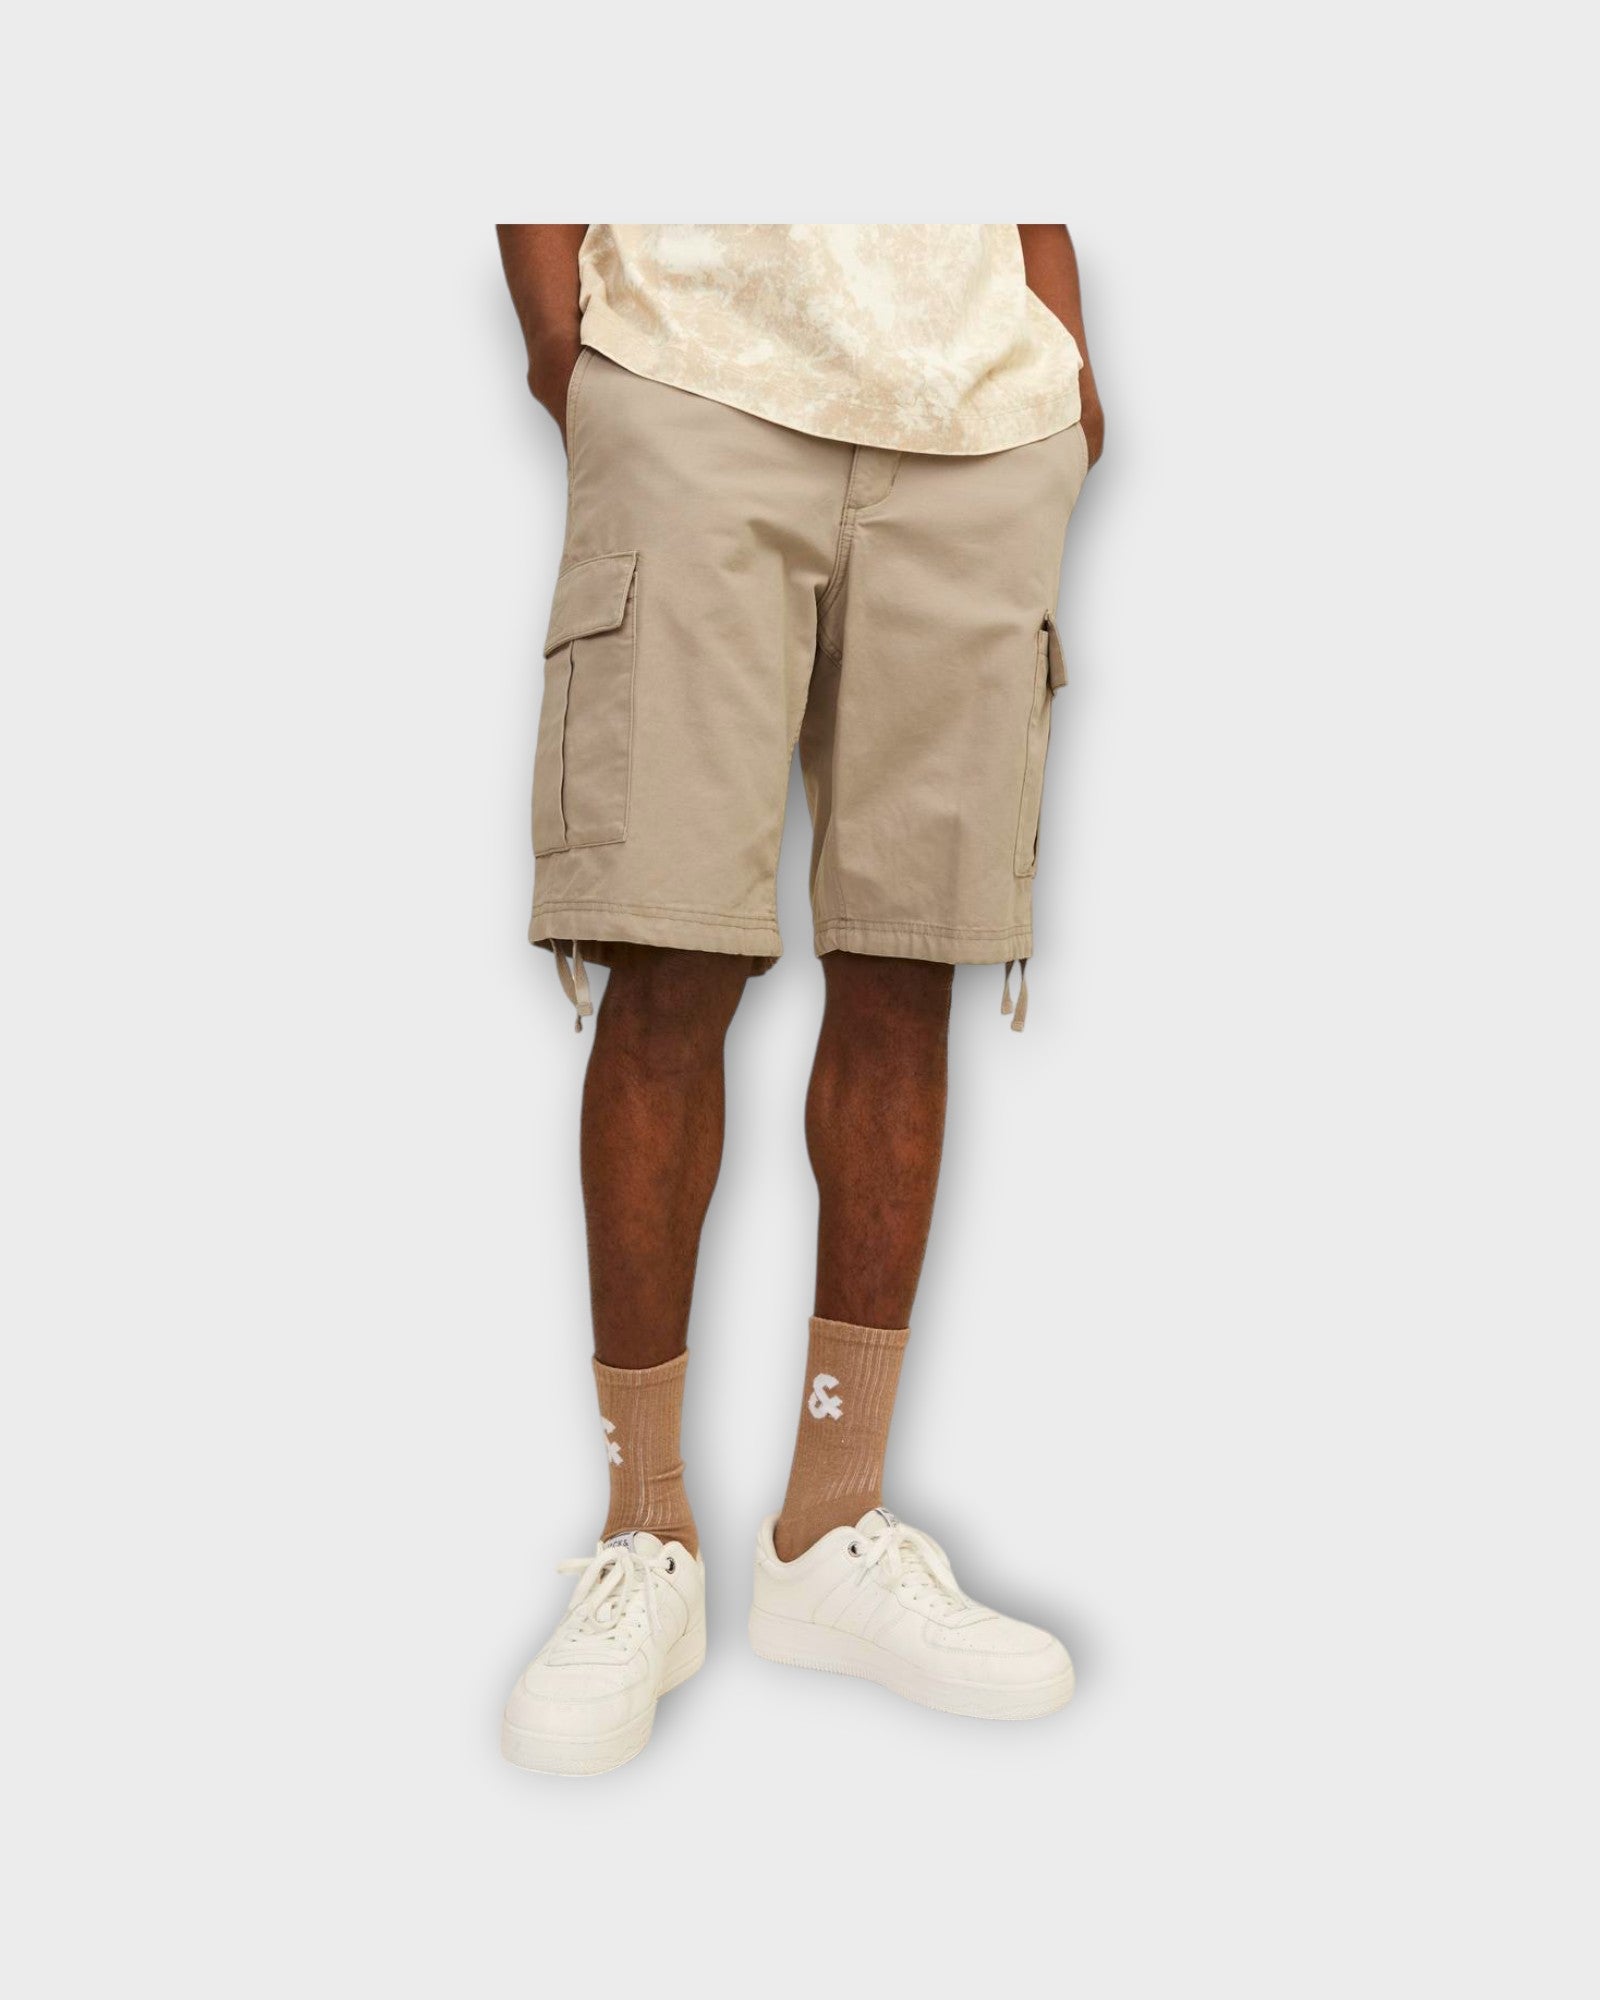 Cole Barkley Cargo Shorts Crockery fra Jack and Jones. Sandfarvet cargo shorts til mænd. Her set på model i closeup.